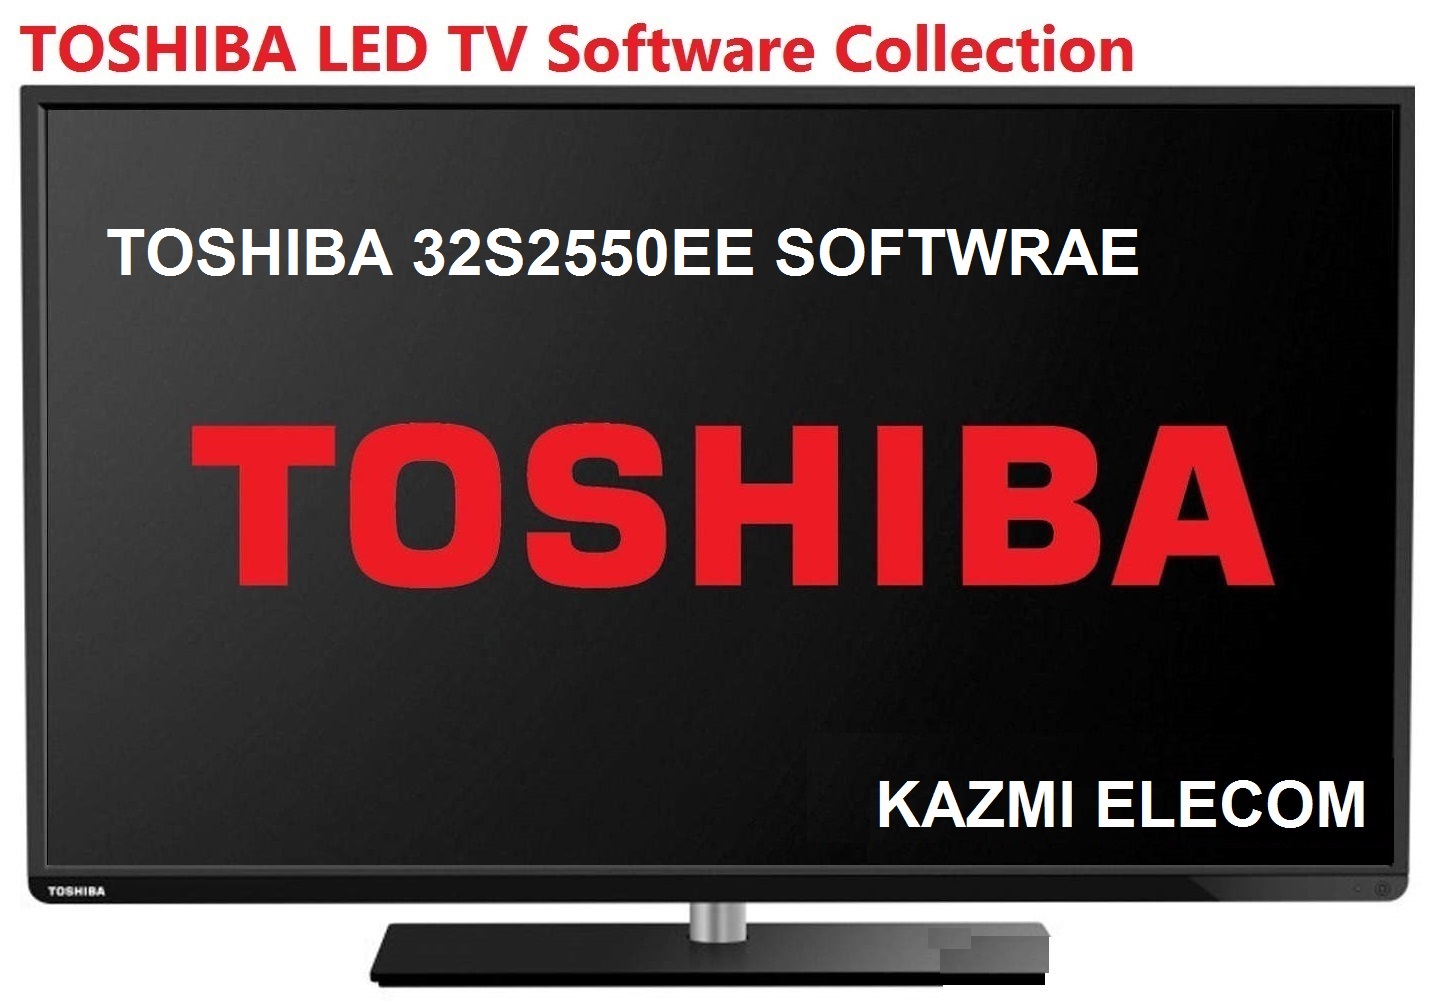 Toshiba 32S2550Ee